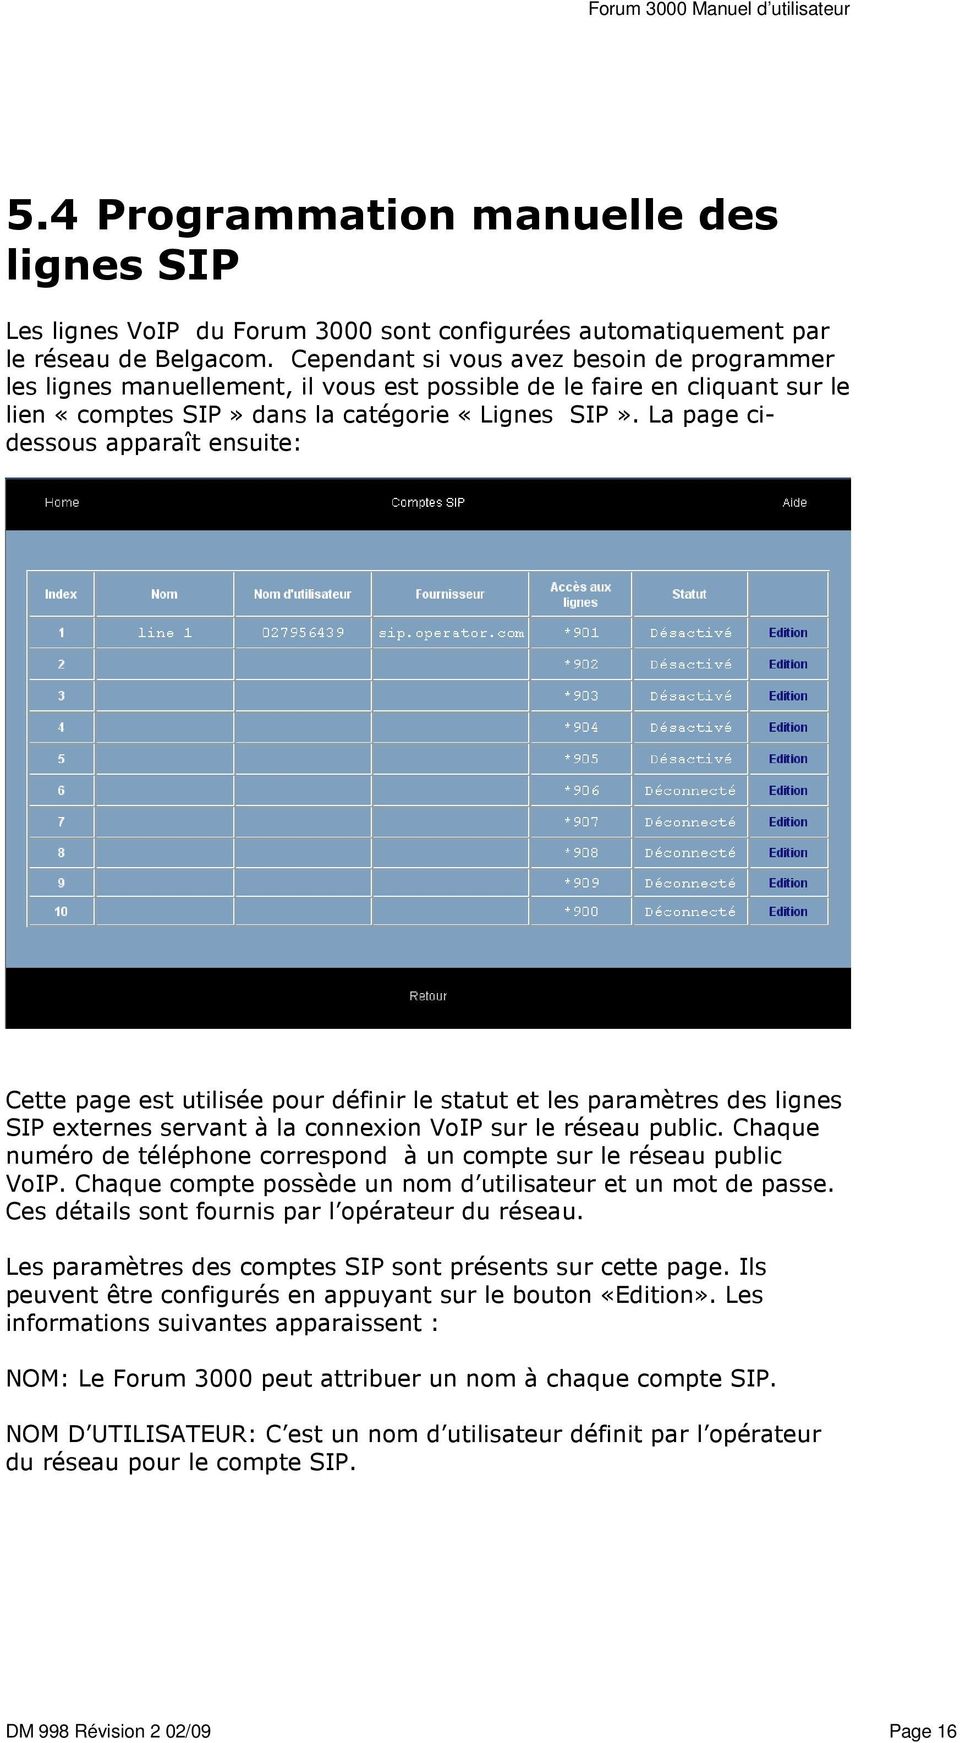 La page cidessous apparaît ensuite: Cette page est utilisée pour définir le statut et les paramètres des lignes SIP externes servant à la connexion VoIP sur le réseau public.